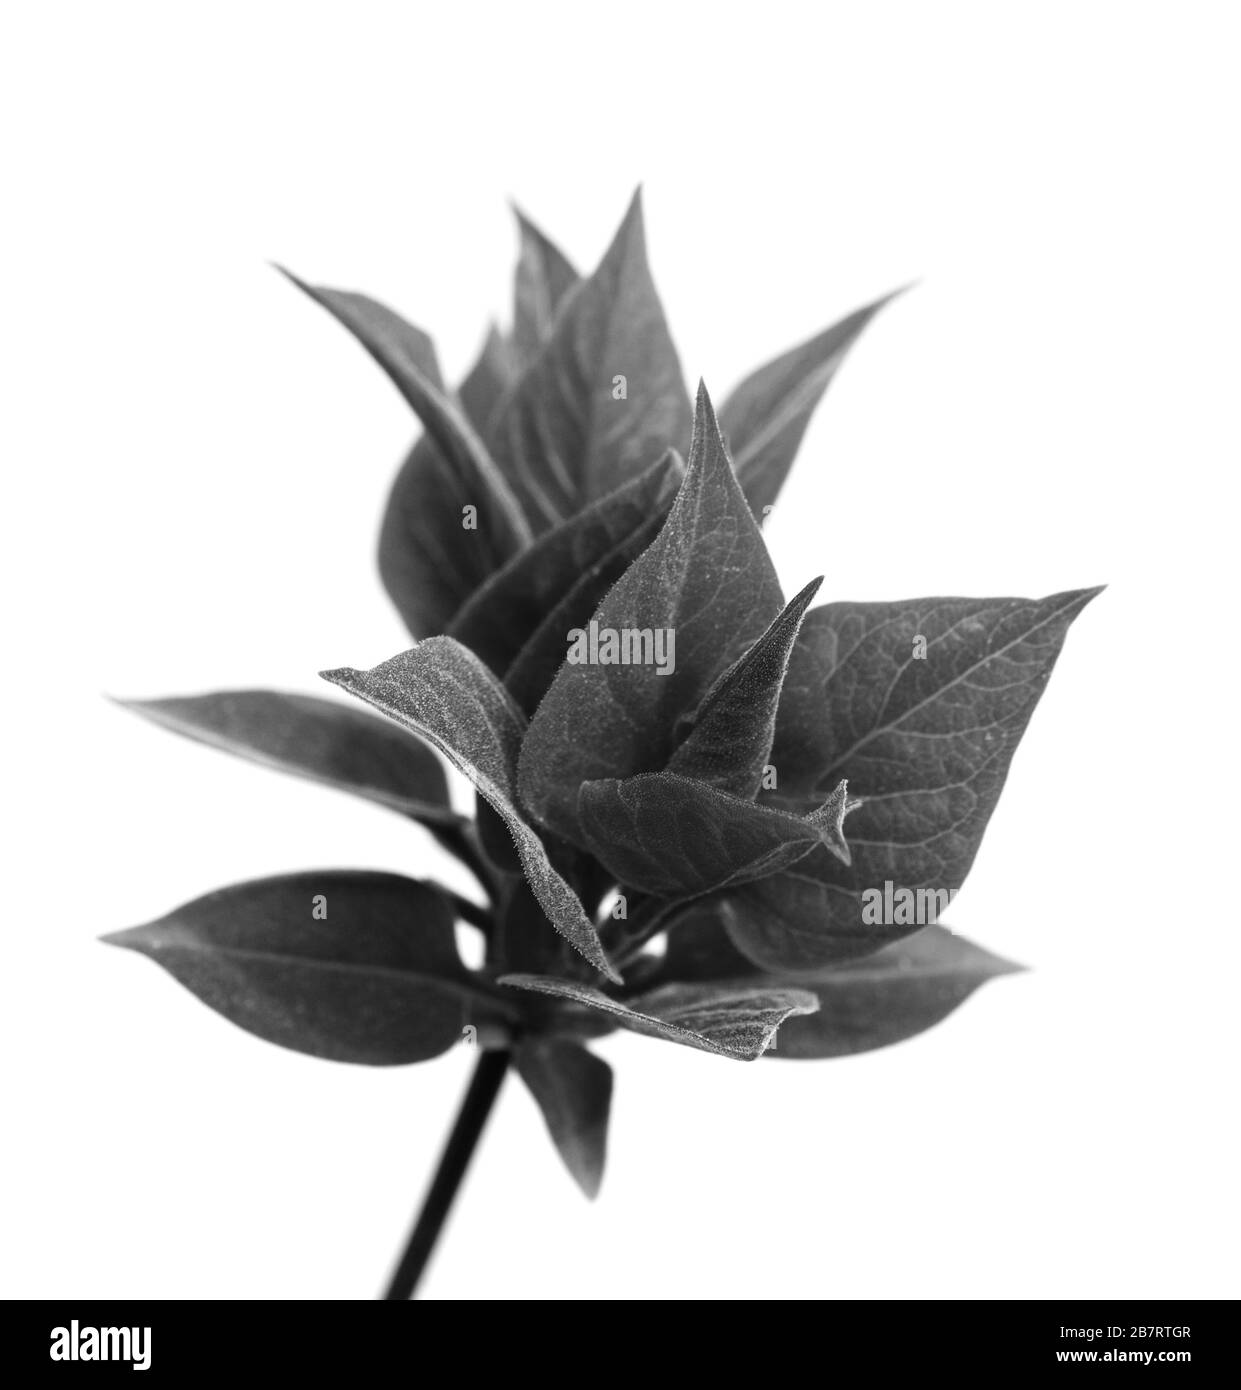 Federperücke mit jungen Blättern. Isoliert auf weißem Hintergrund. Schwarz-weiß gezungtes Bild. Stockfoto